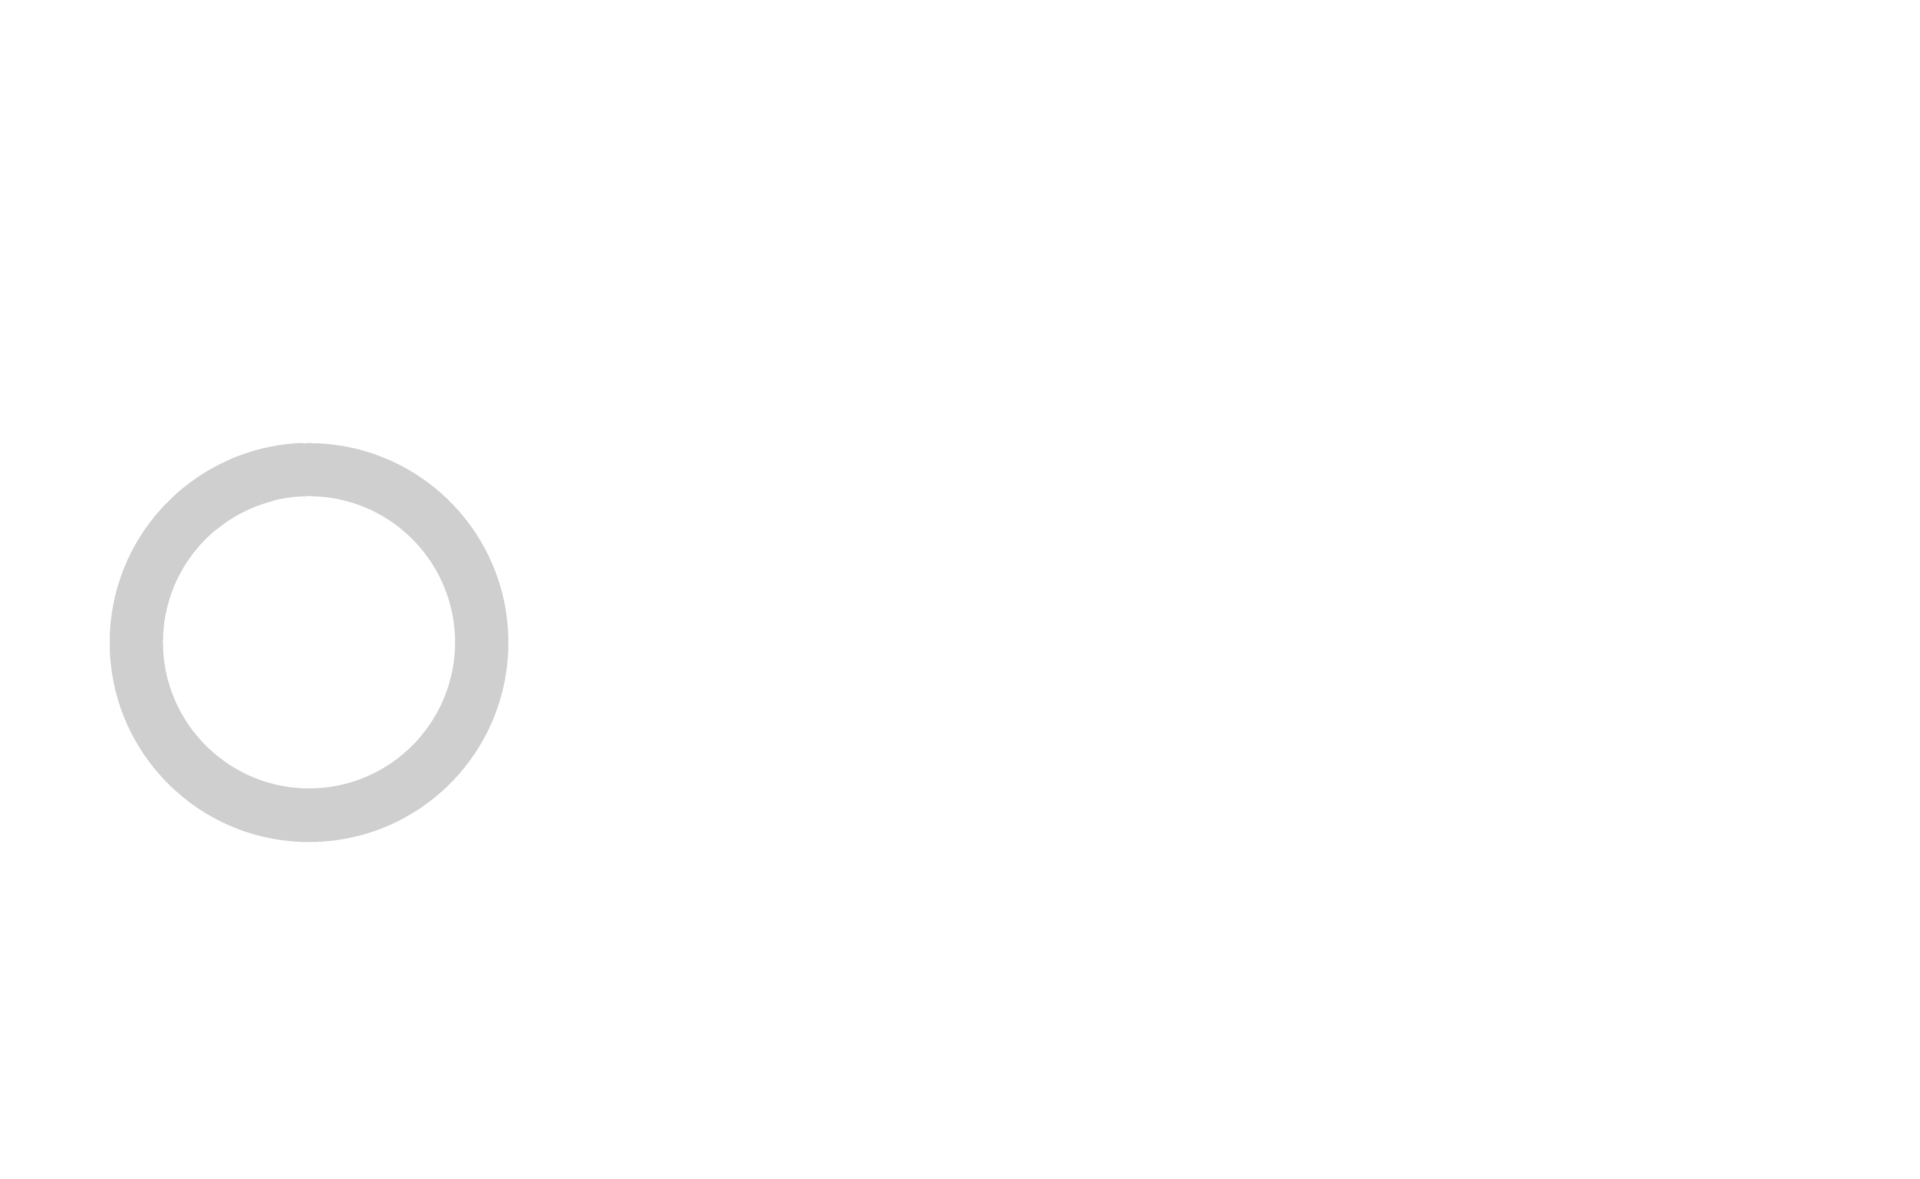 Celo-01